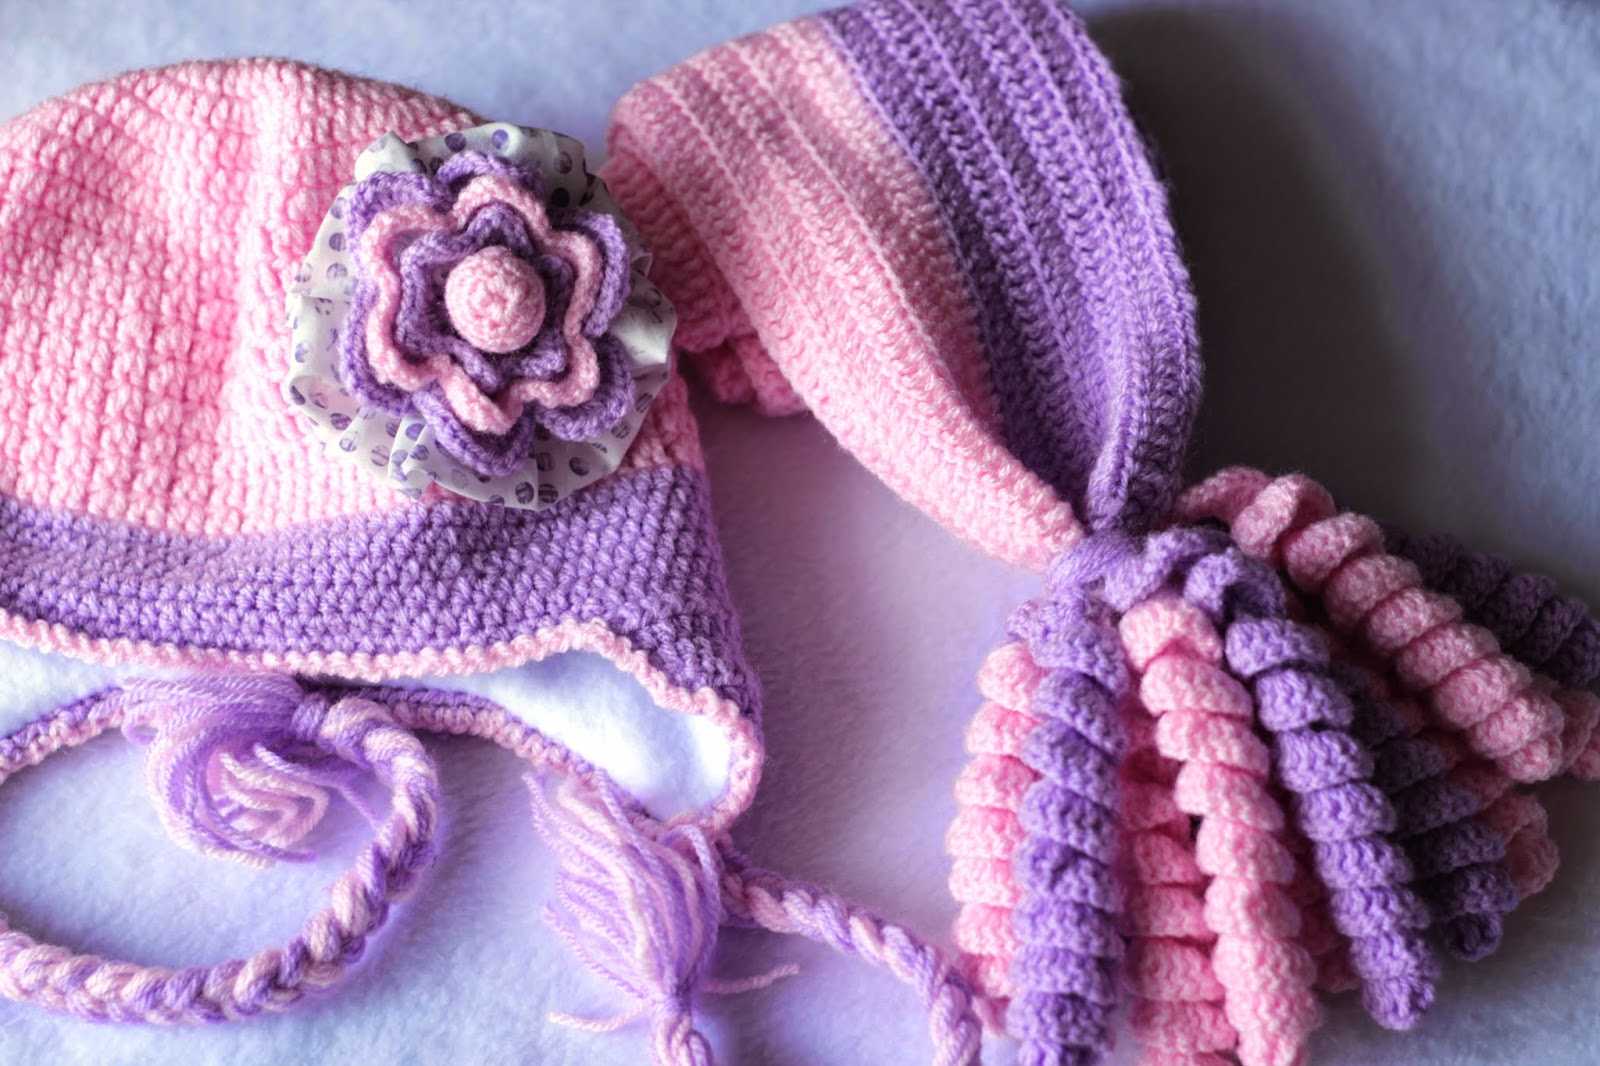 Вязание шарфа на спицах для девочки(5 популярных моделей)